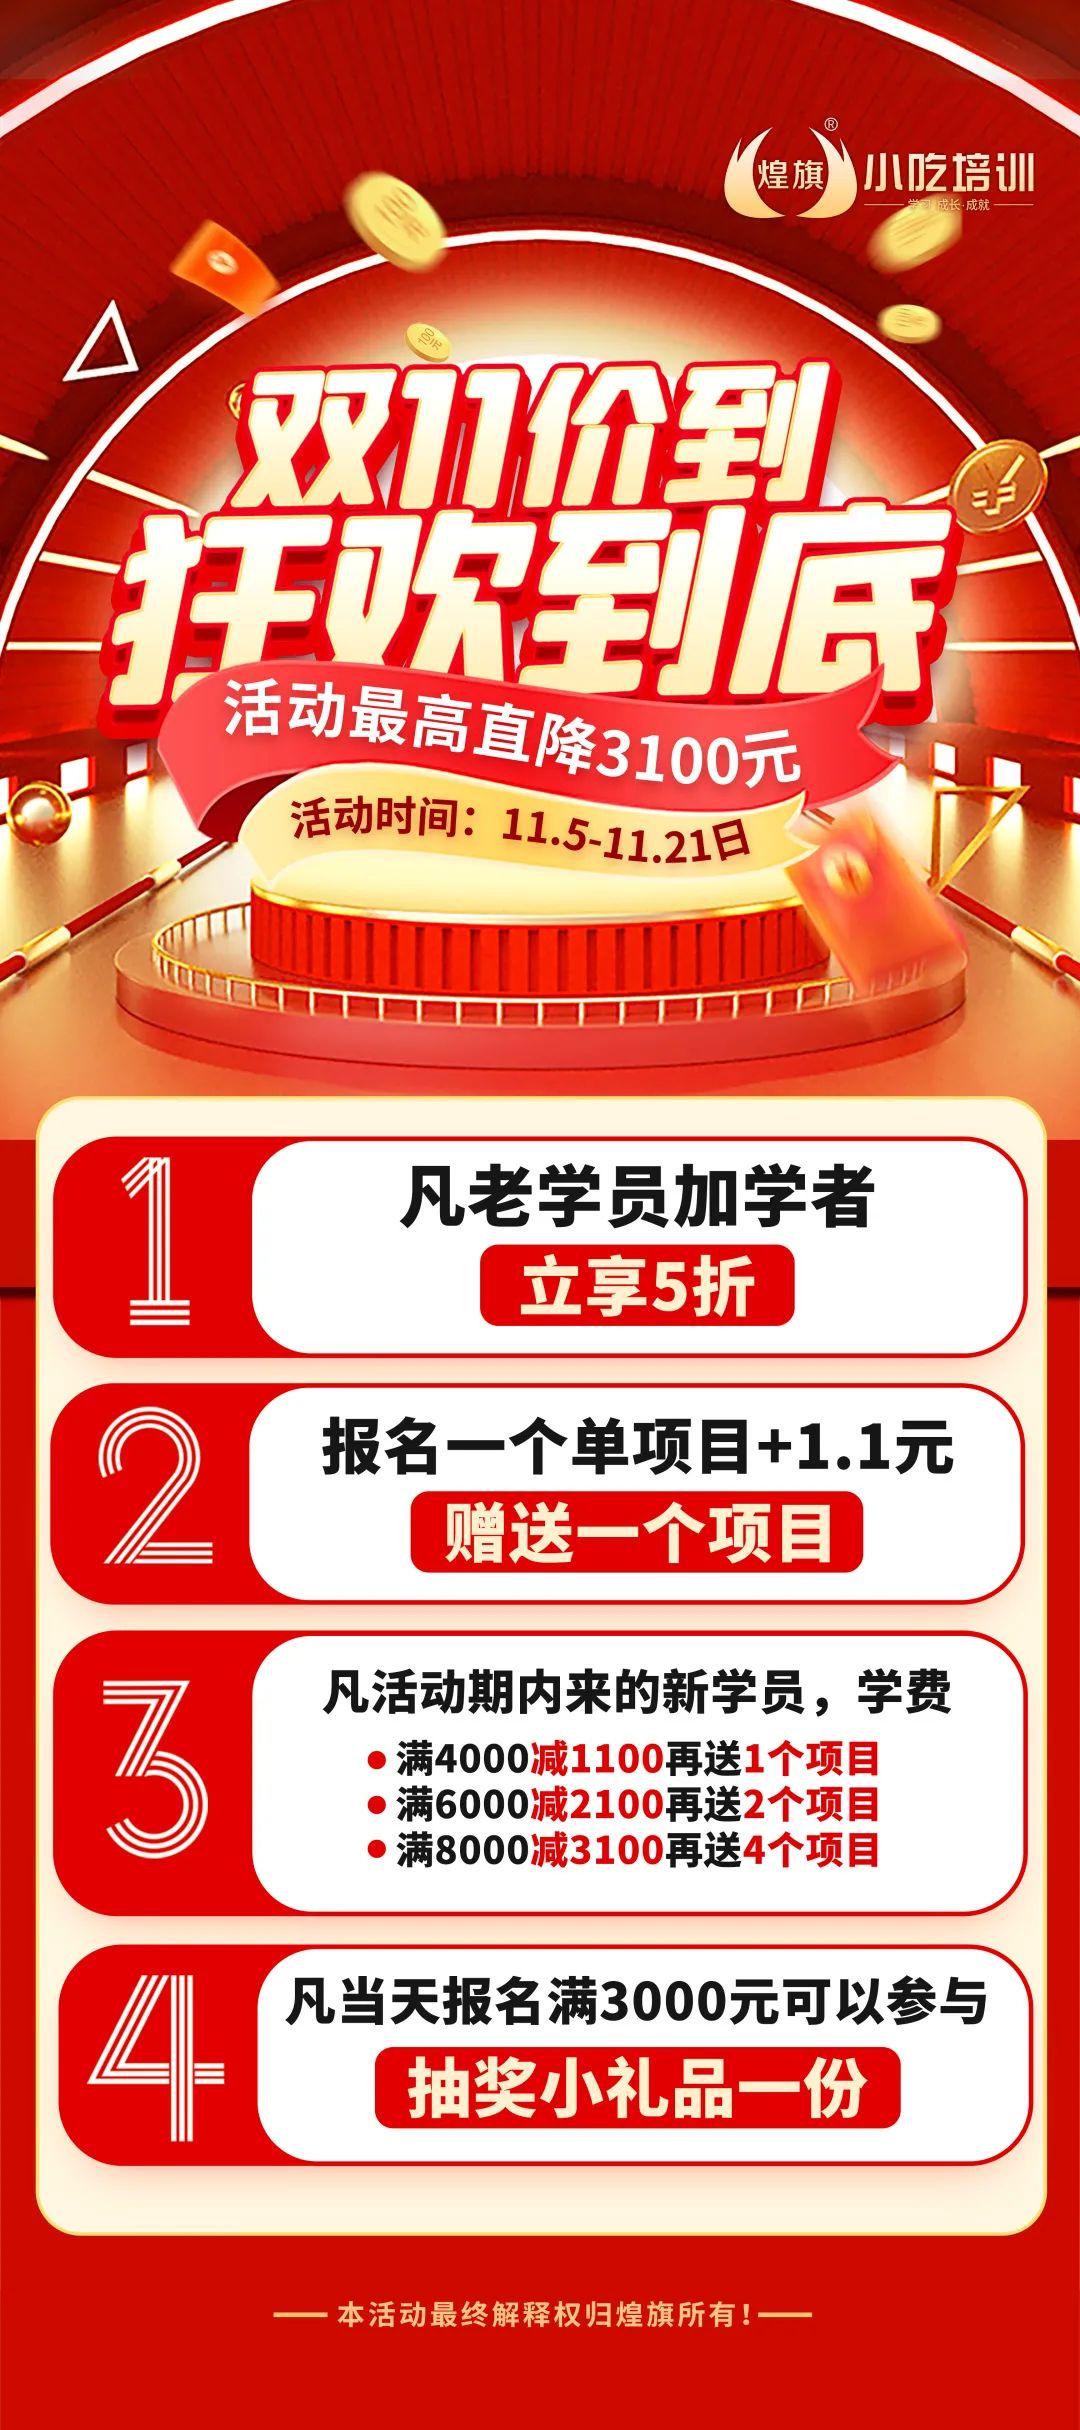 深圳煌旗双11巨惠到，报名小吃培训最高直降三千元！